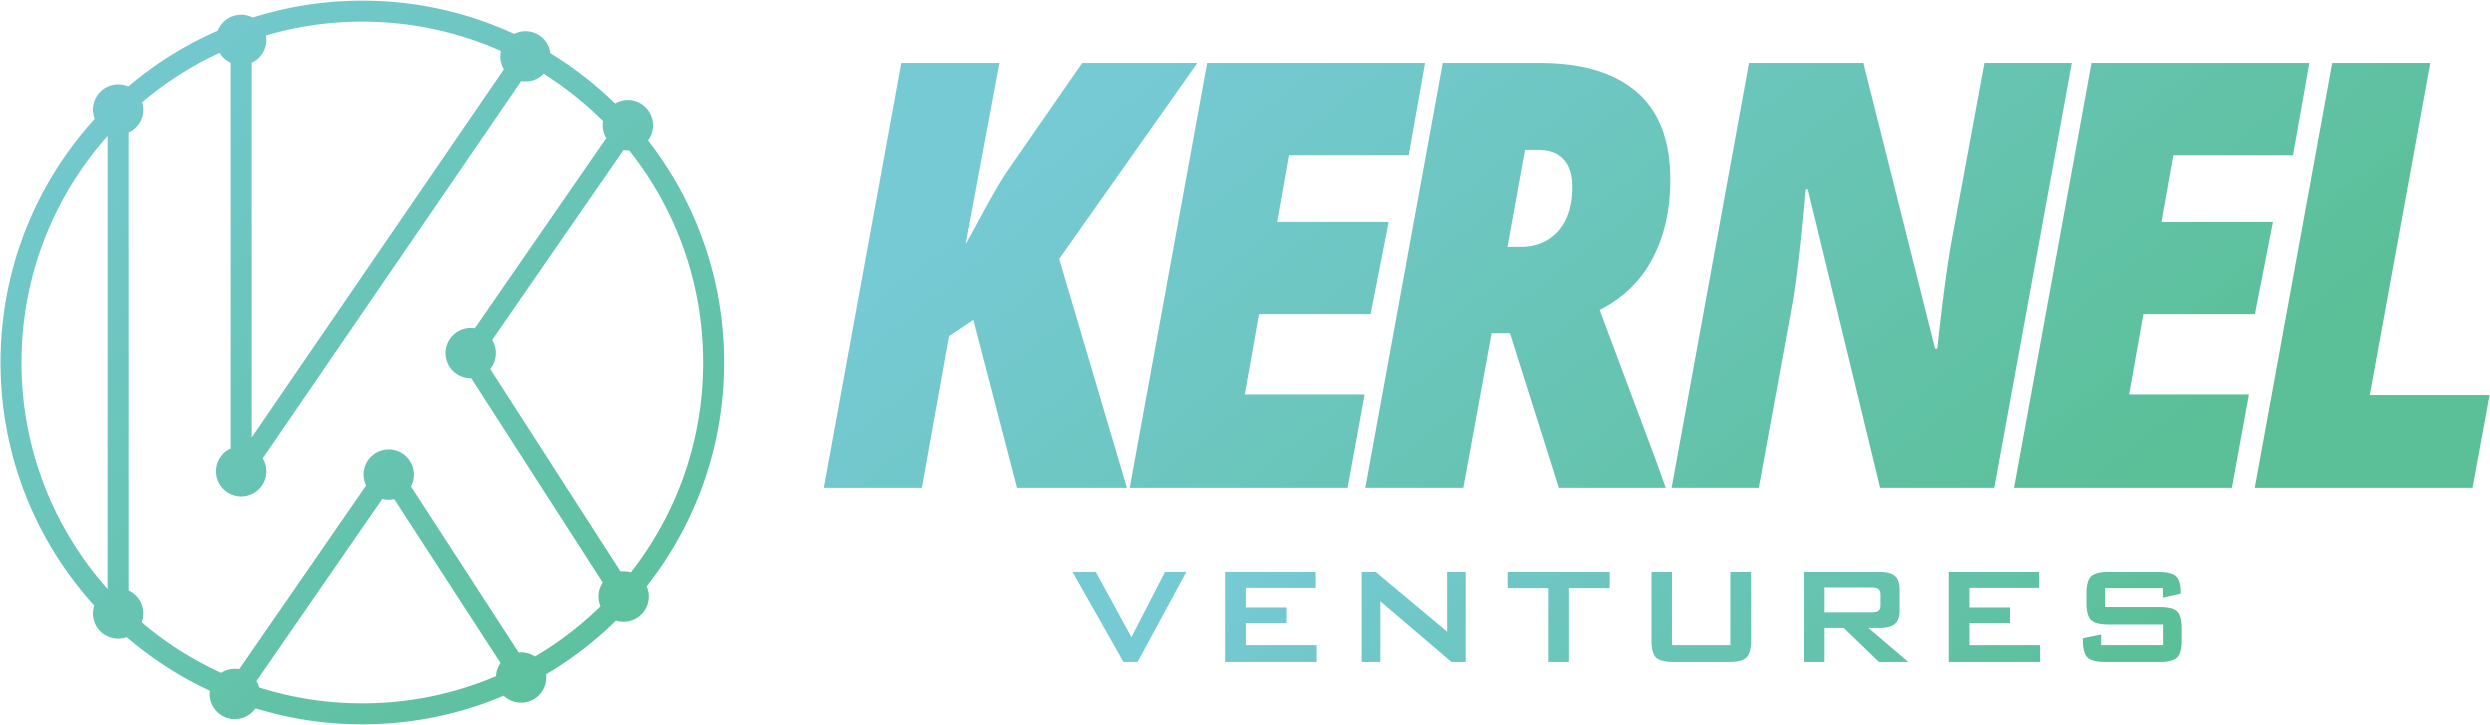 Kernel Ventures